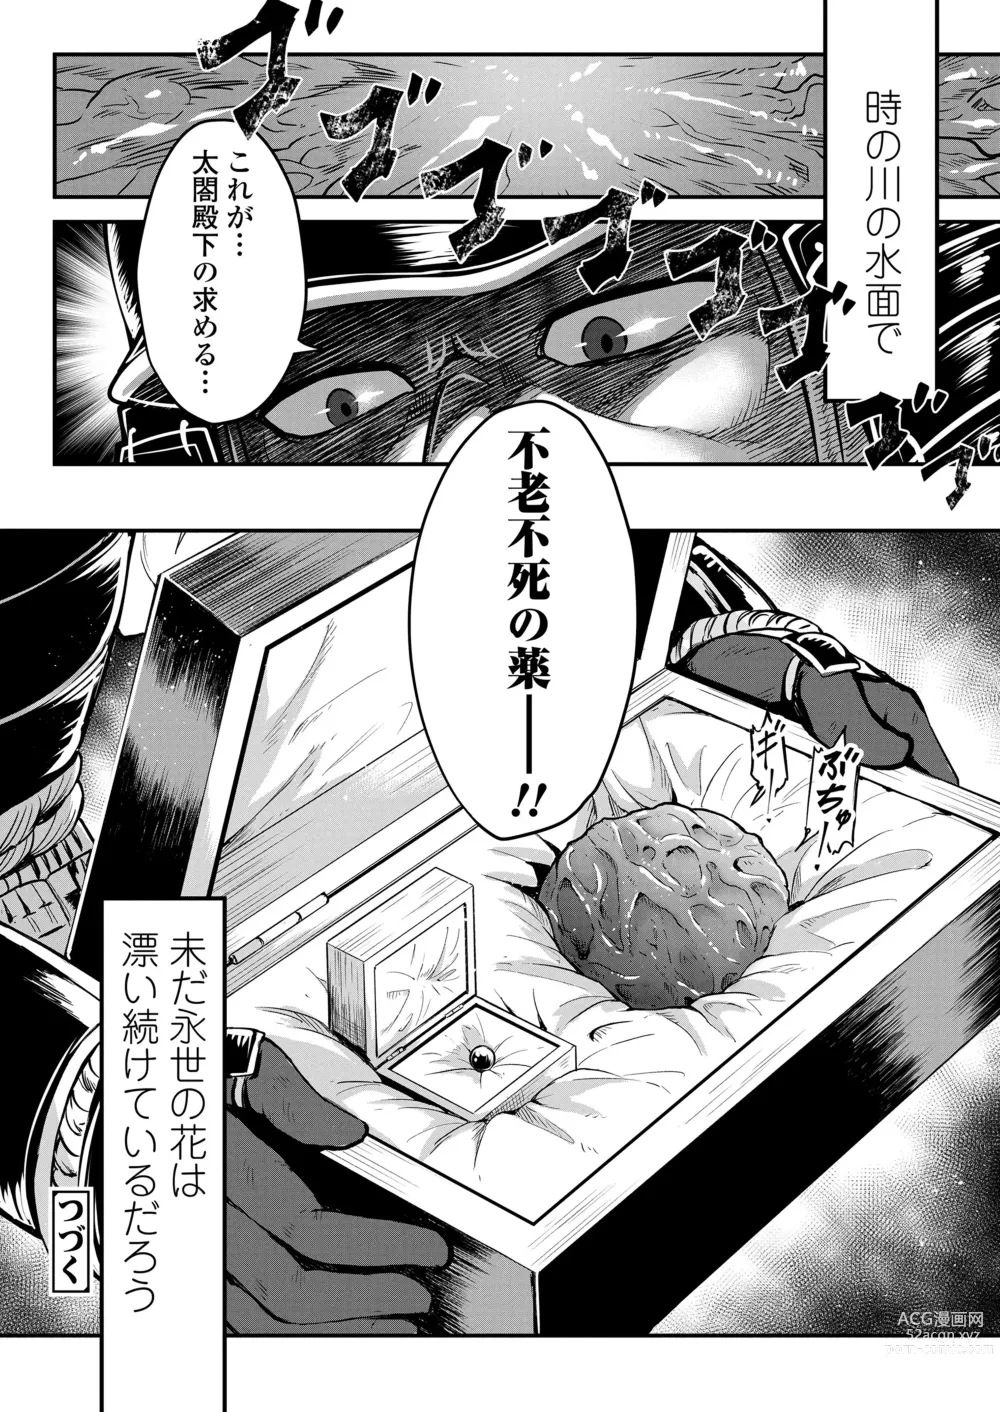 Page 316 of manga Towako 15